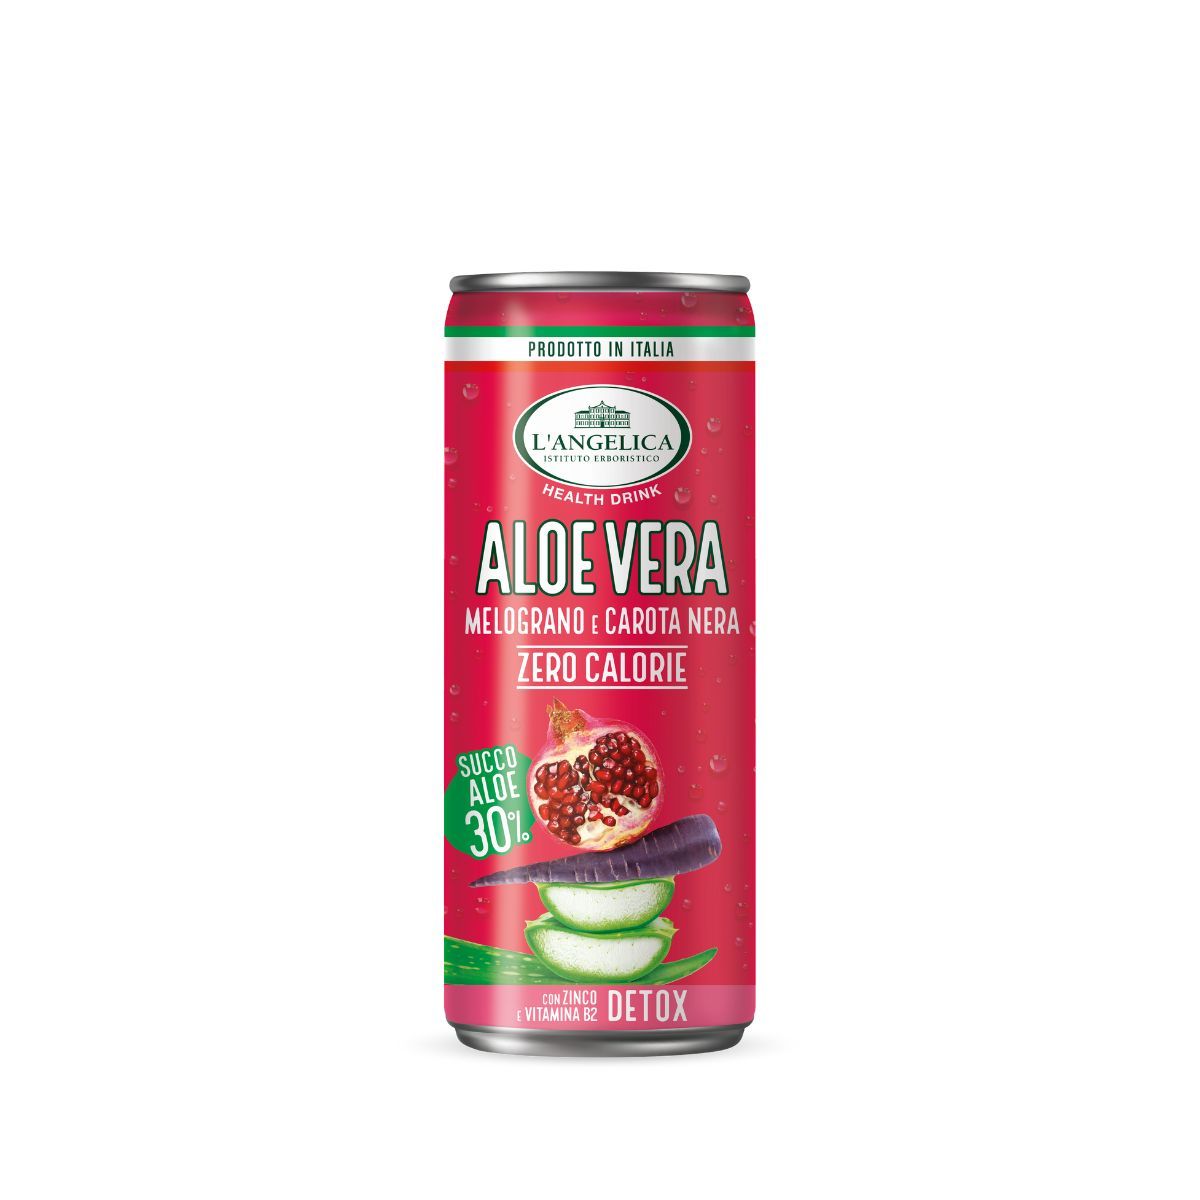 Drink Aloe Vera 30% in lattina - Melograno e Carota Nera 